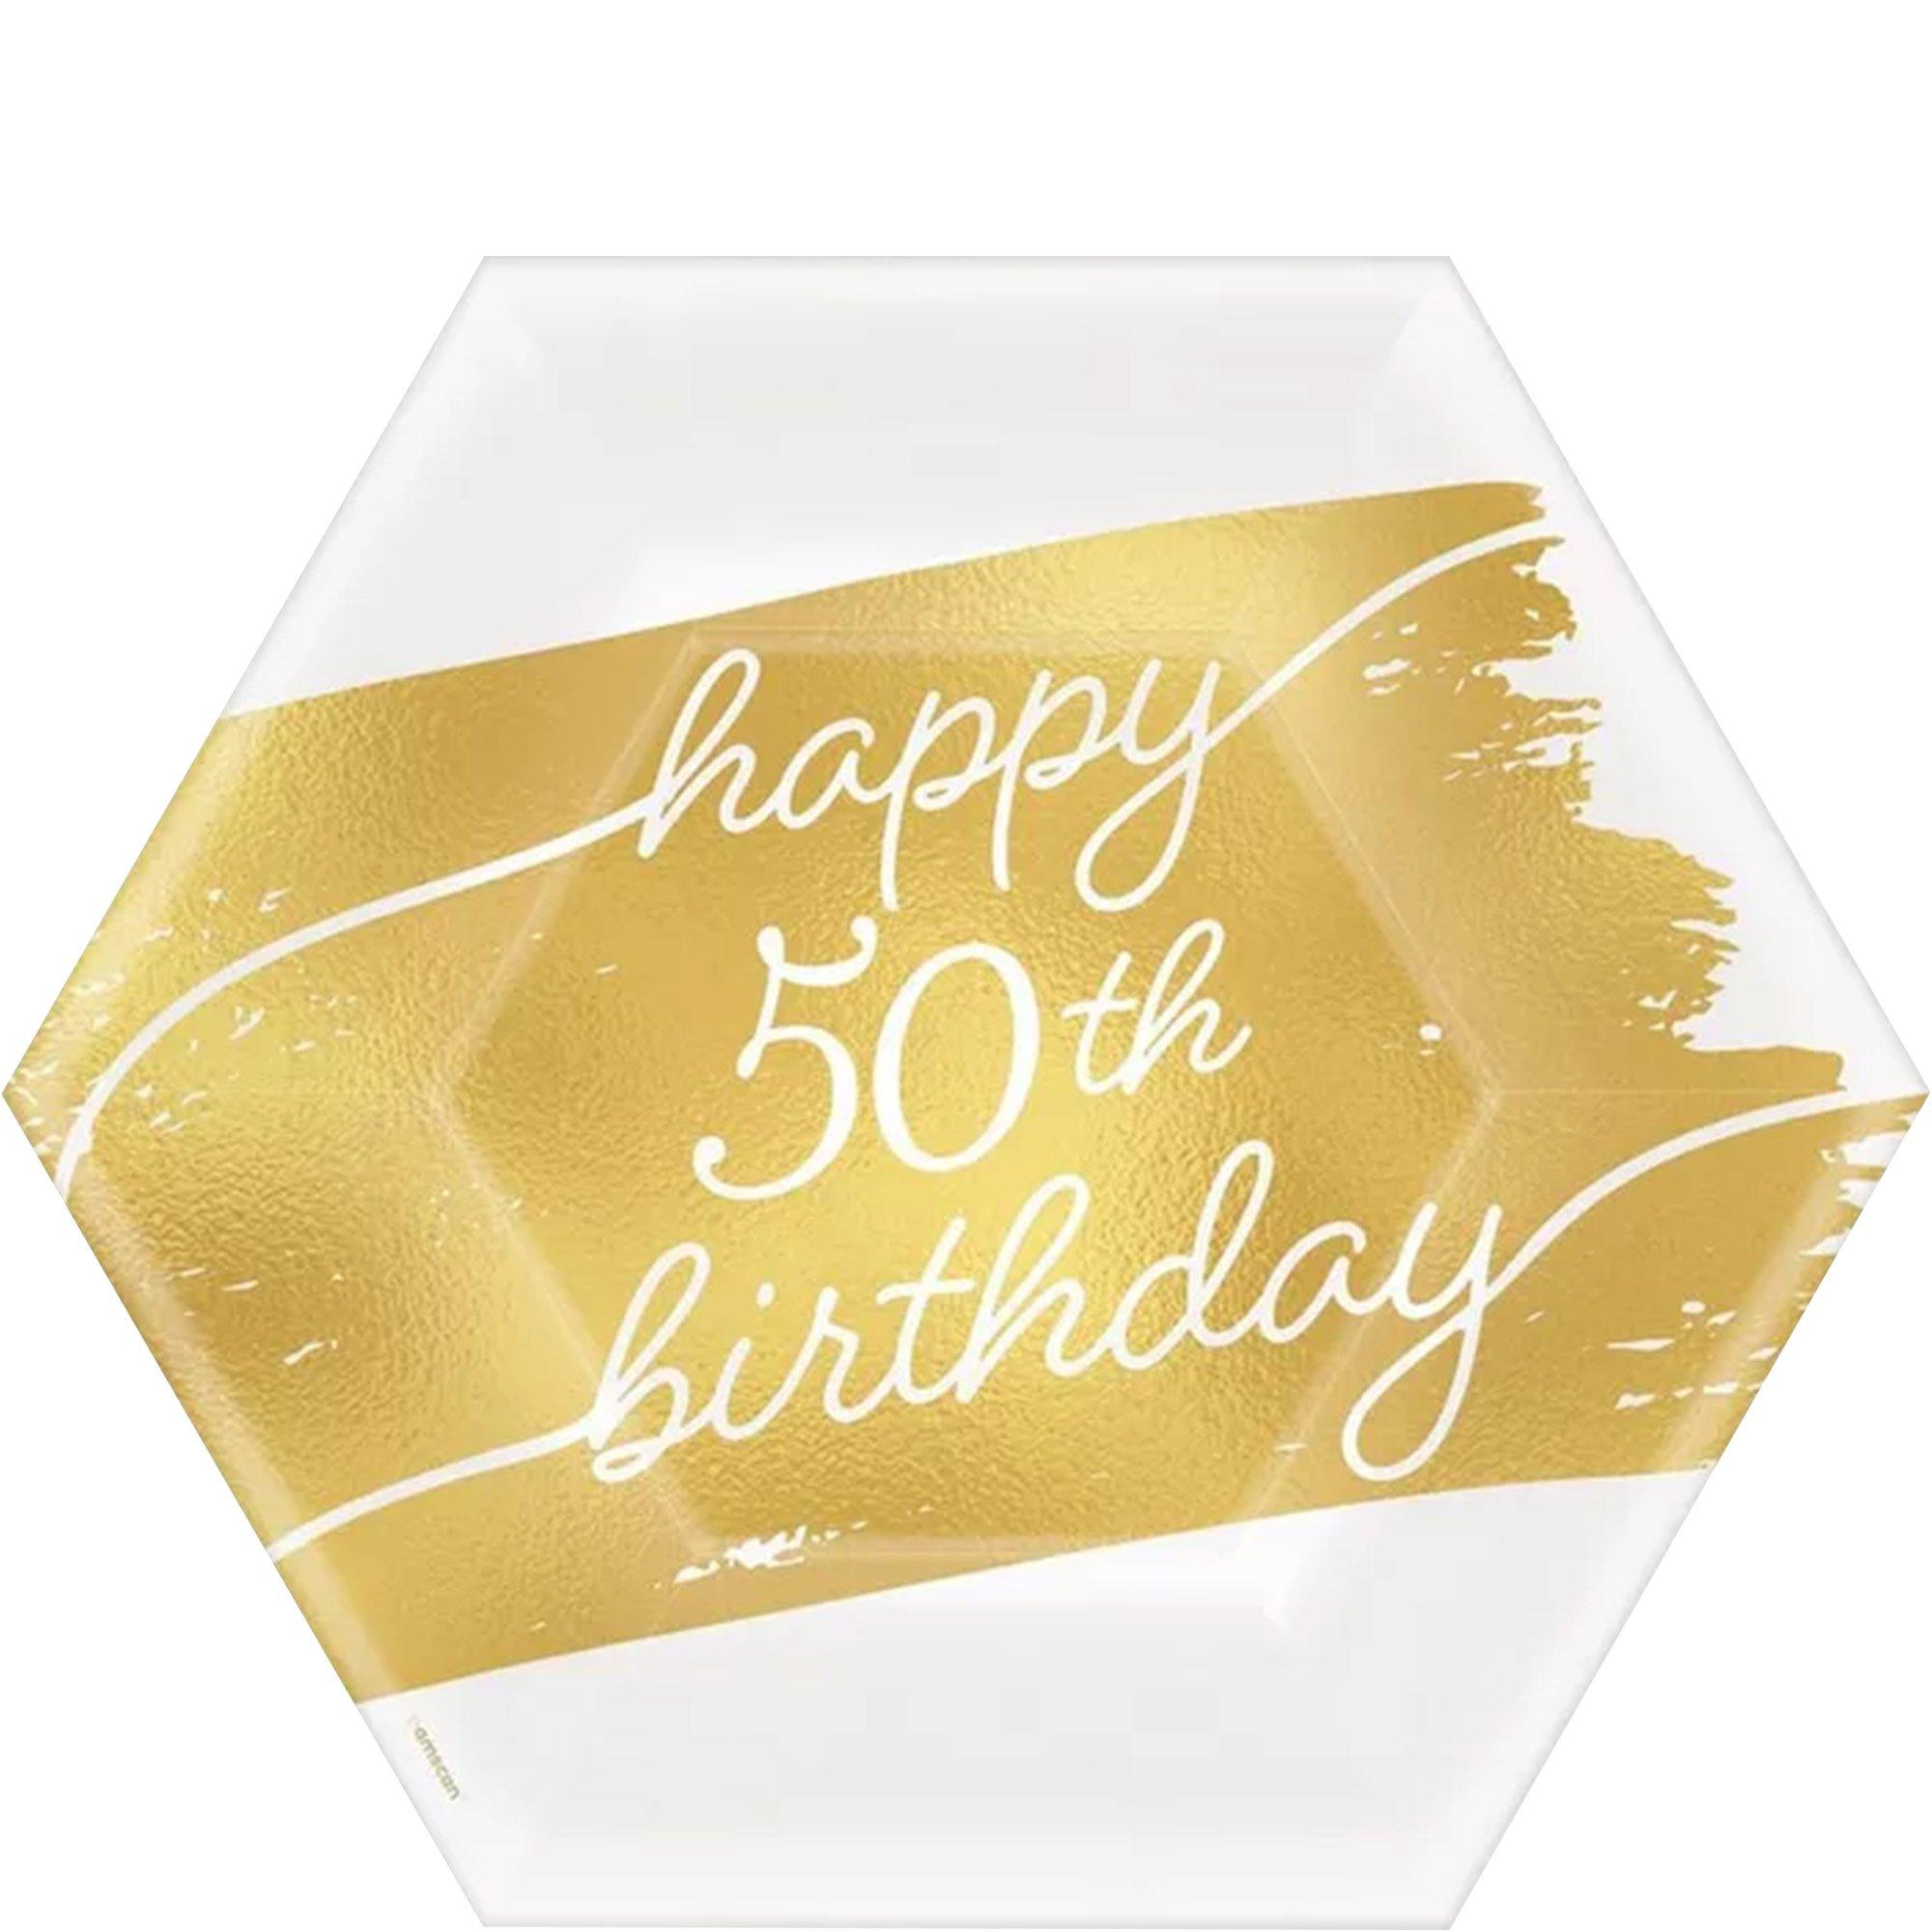 Với món trang trí bánh sinh nhật kim loại bóng bẩy và sáng bóng như vàng, bạn sẽ có một chiếc bánh sinh nhật độc đáo và ấn tượng, chắc chắn sẽ là trung tâm của bữa tiệc và khiến các khách mời của bạn được thưởng thức những khoảnh khắc thật đáng nhớ.